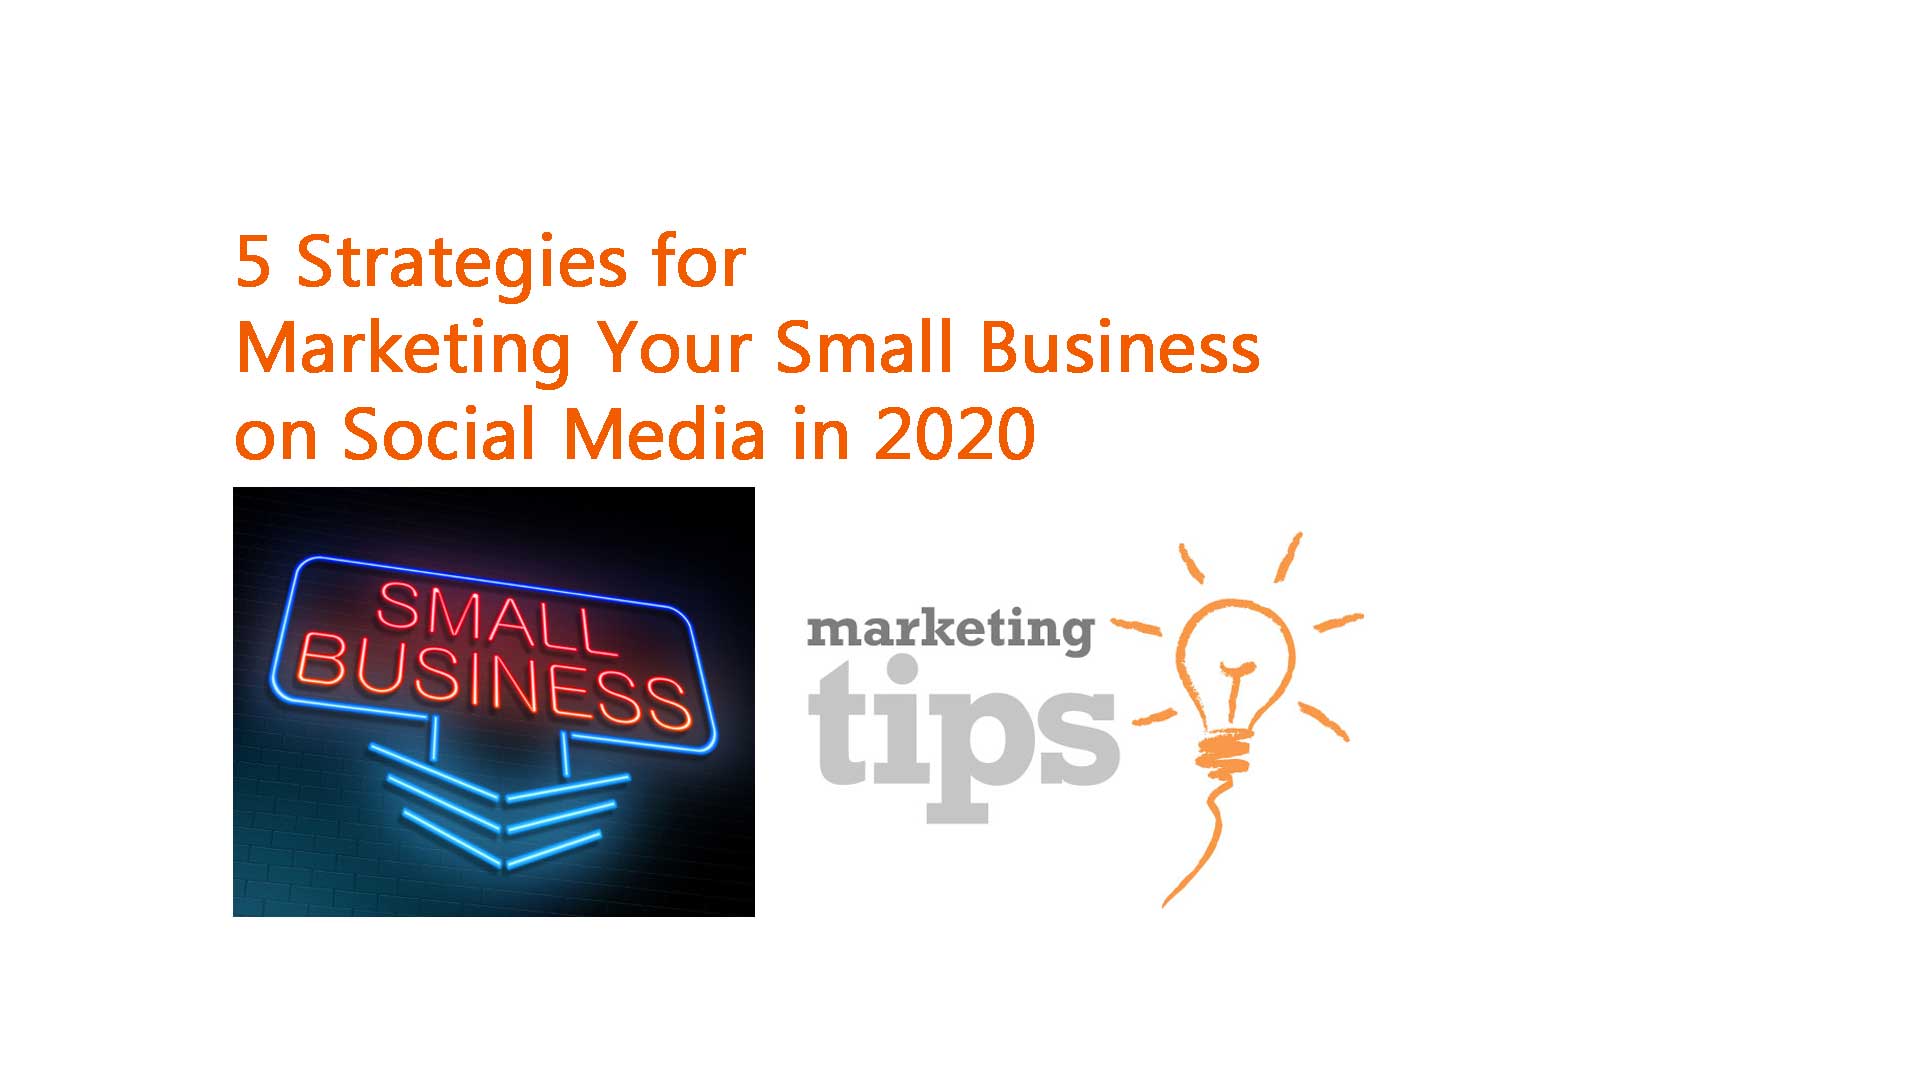 small business social media marketing